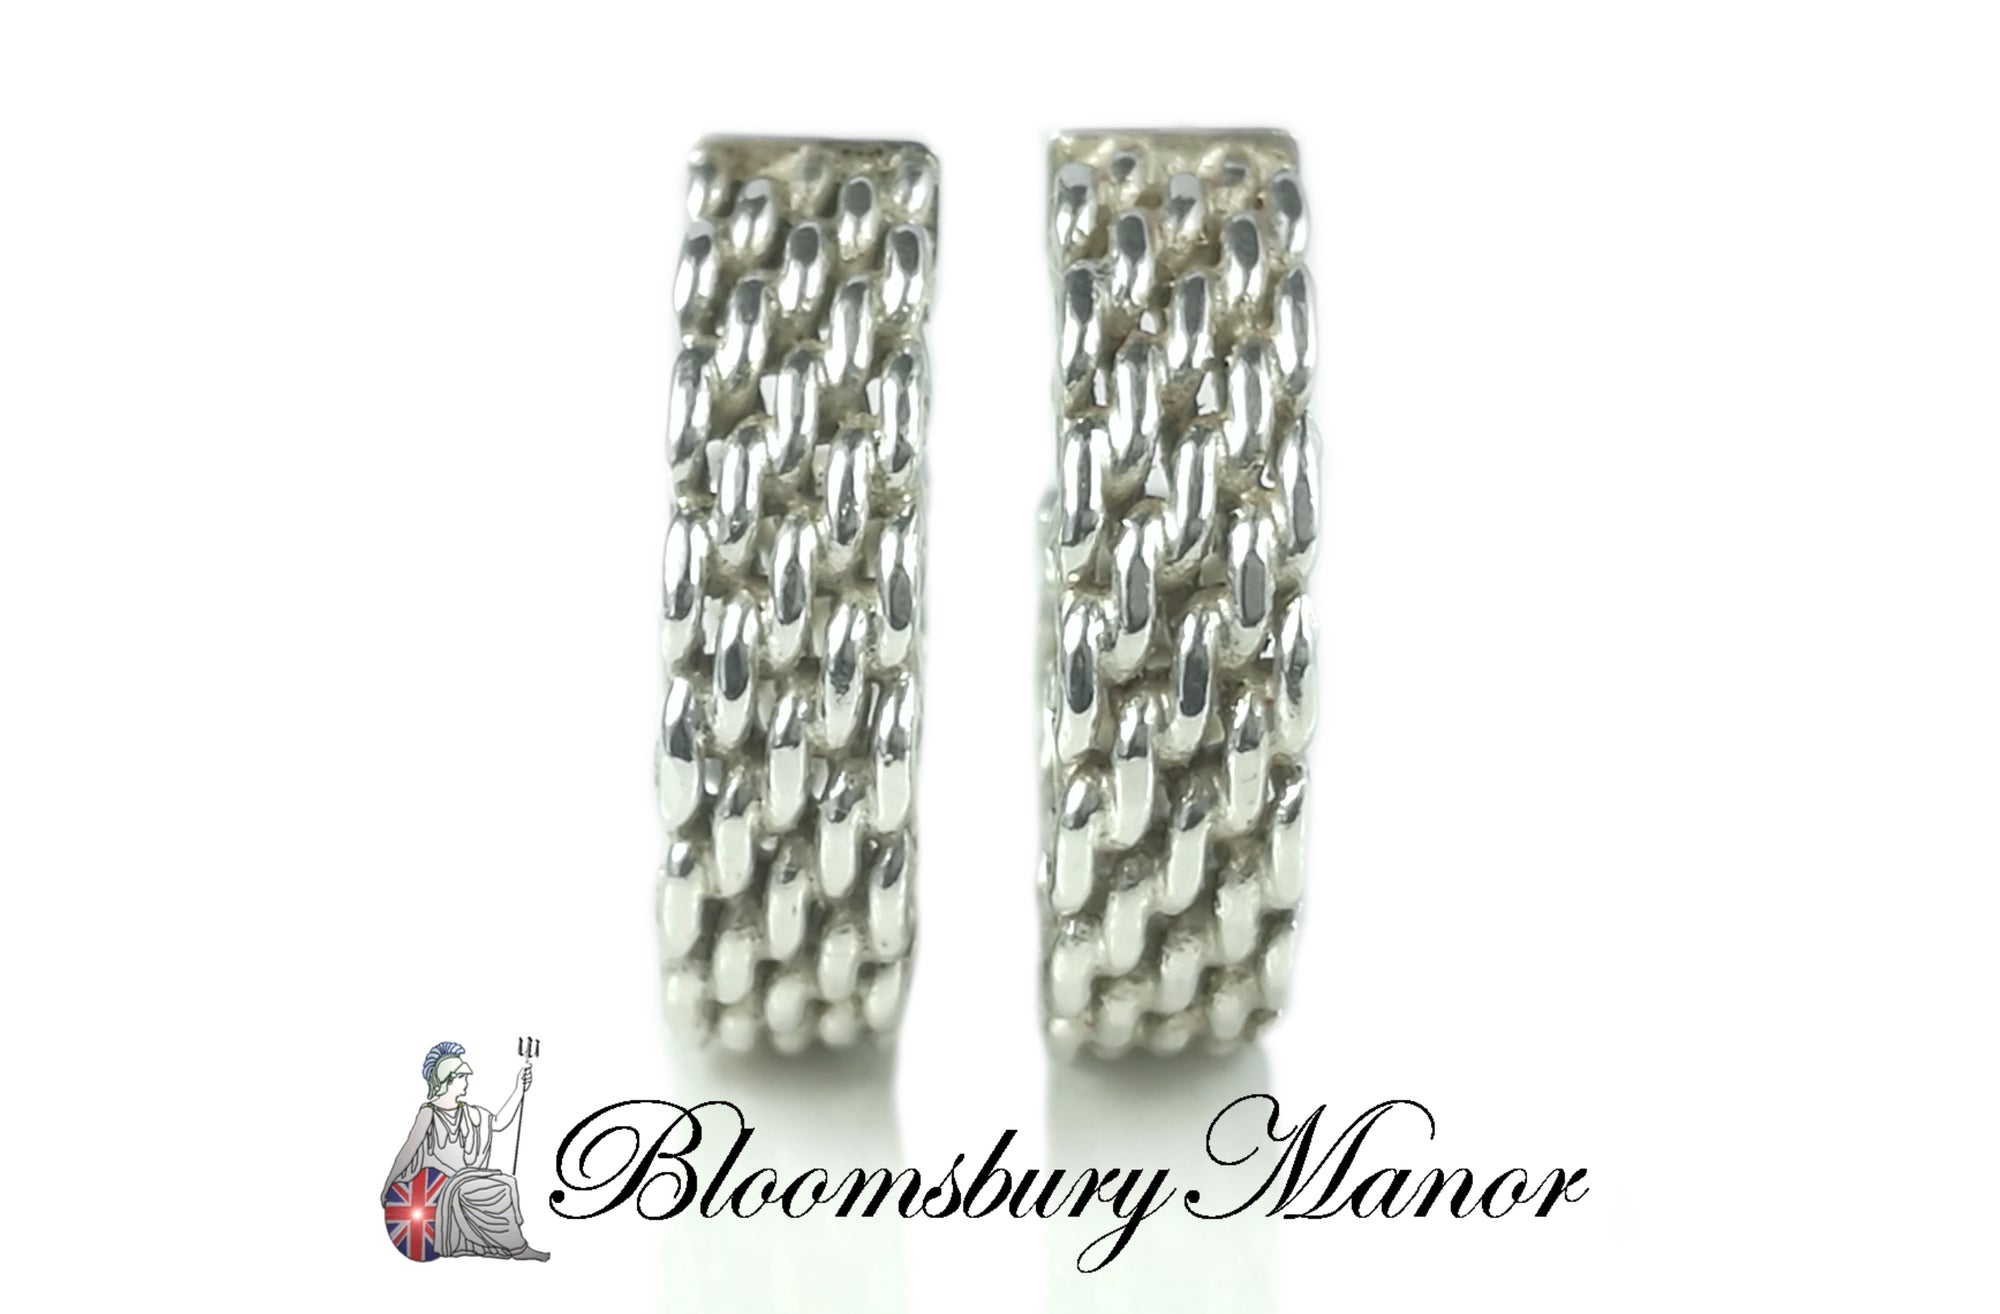 Tiffany & Co. Somerset Sterling Silver Hoop Earrings